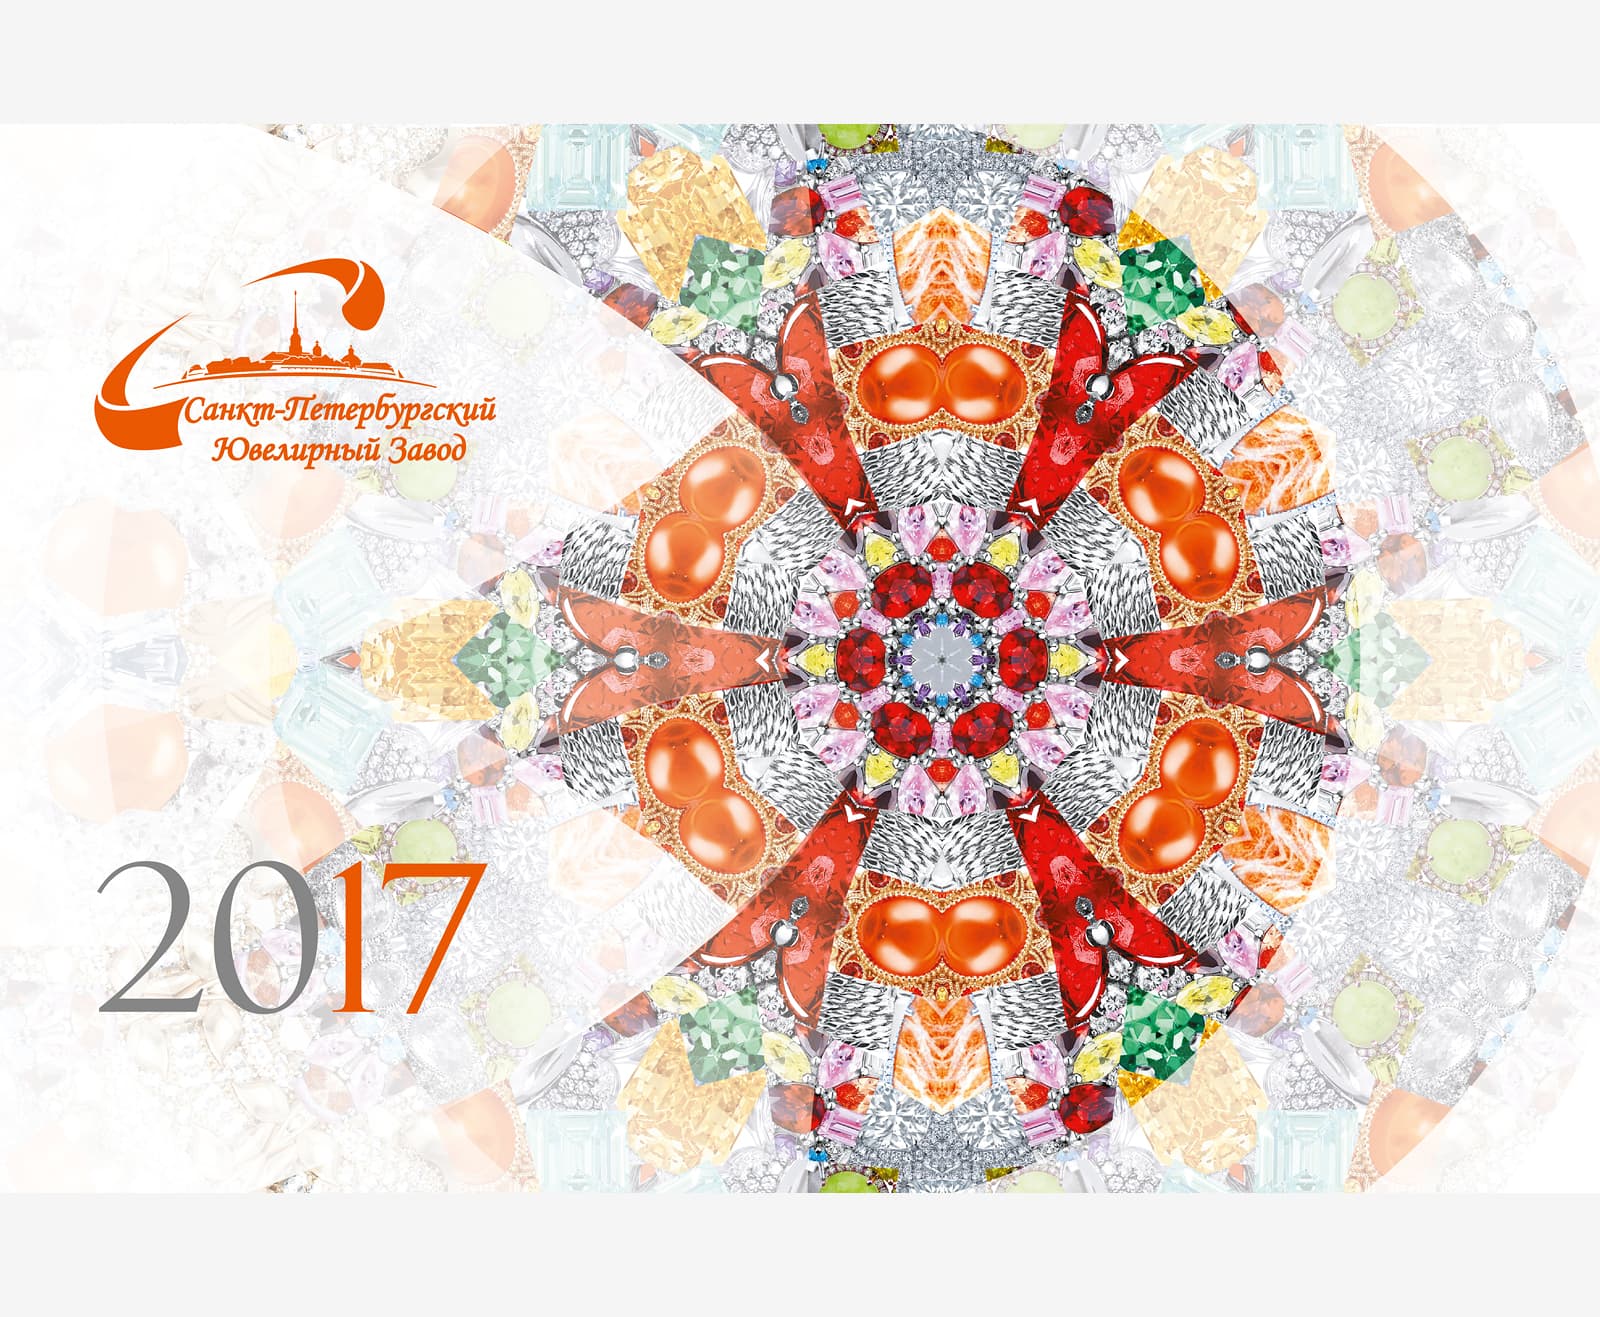 Ювелирный калейдоскоп для календаря компании «Ювелиры Северной Столицы» на 2017 год